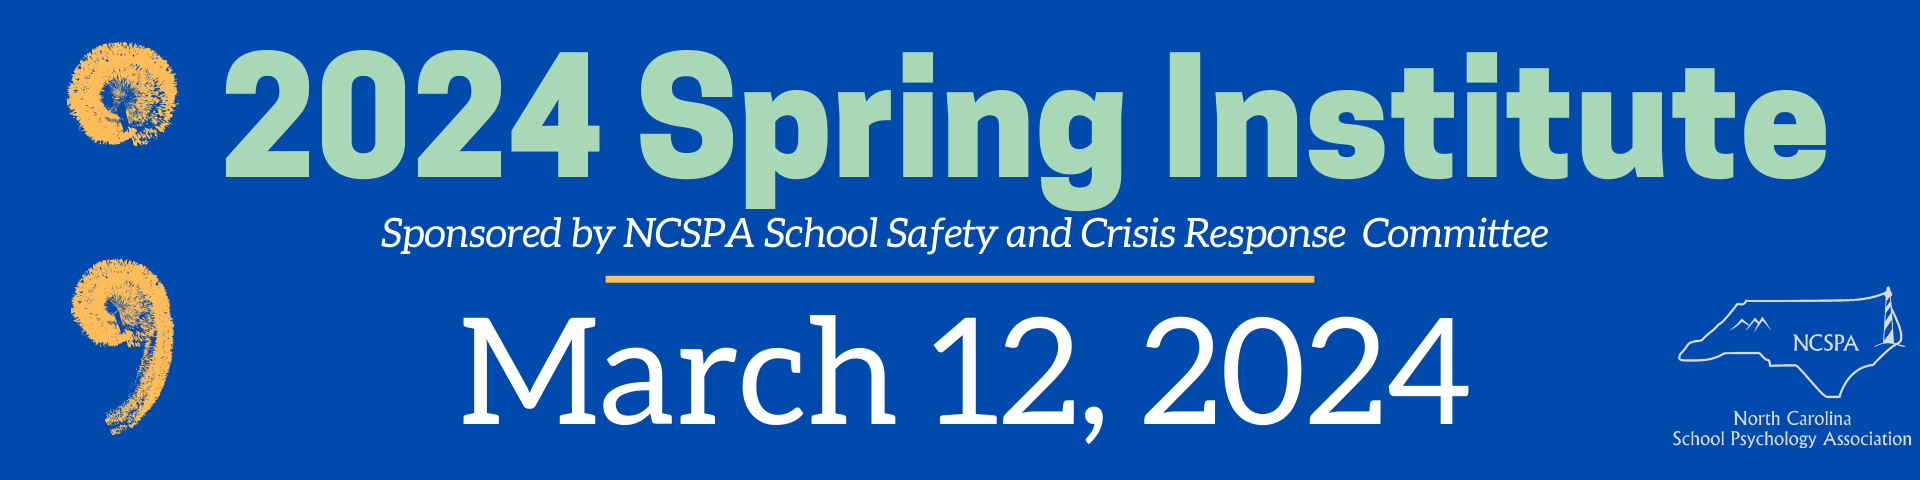 Spring Institute header - March 12, 2024